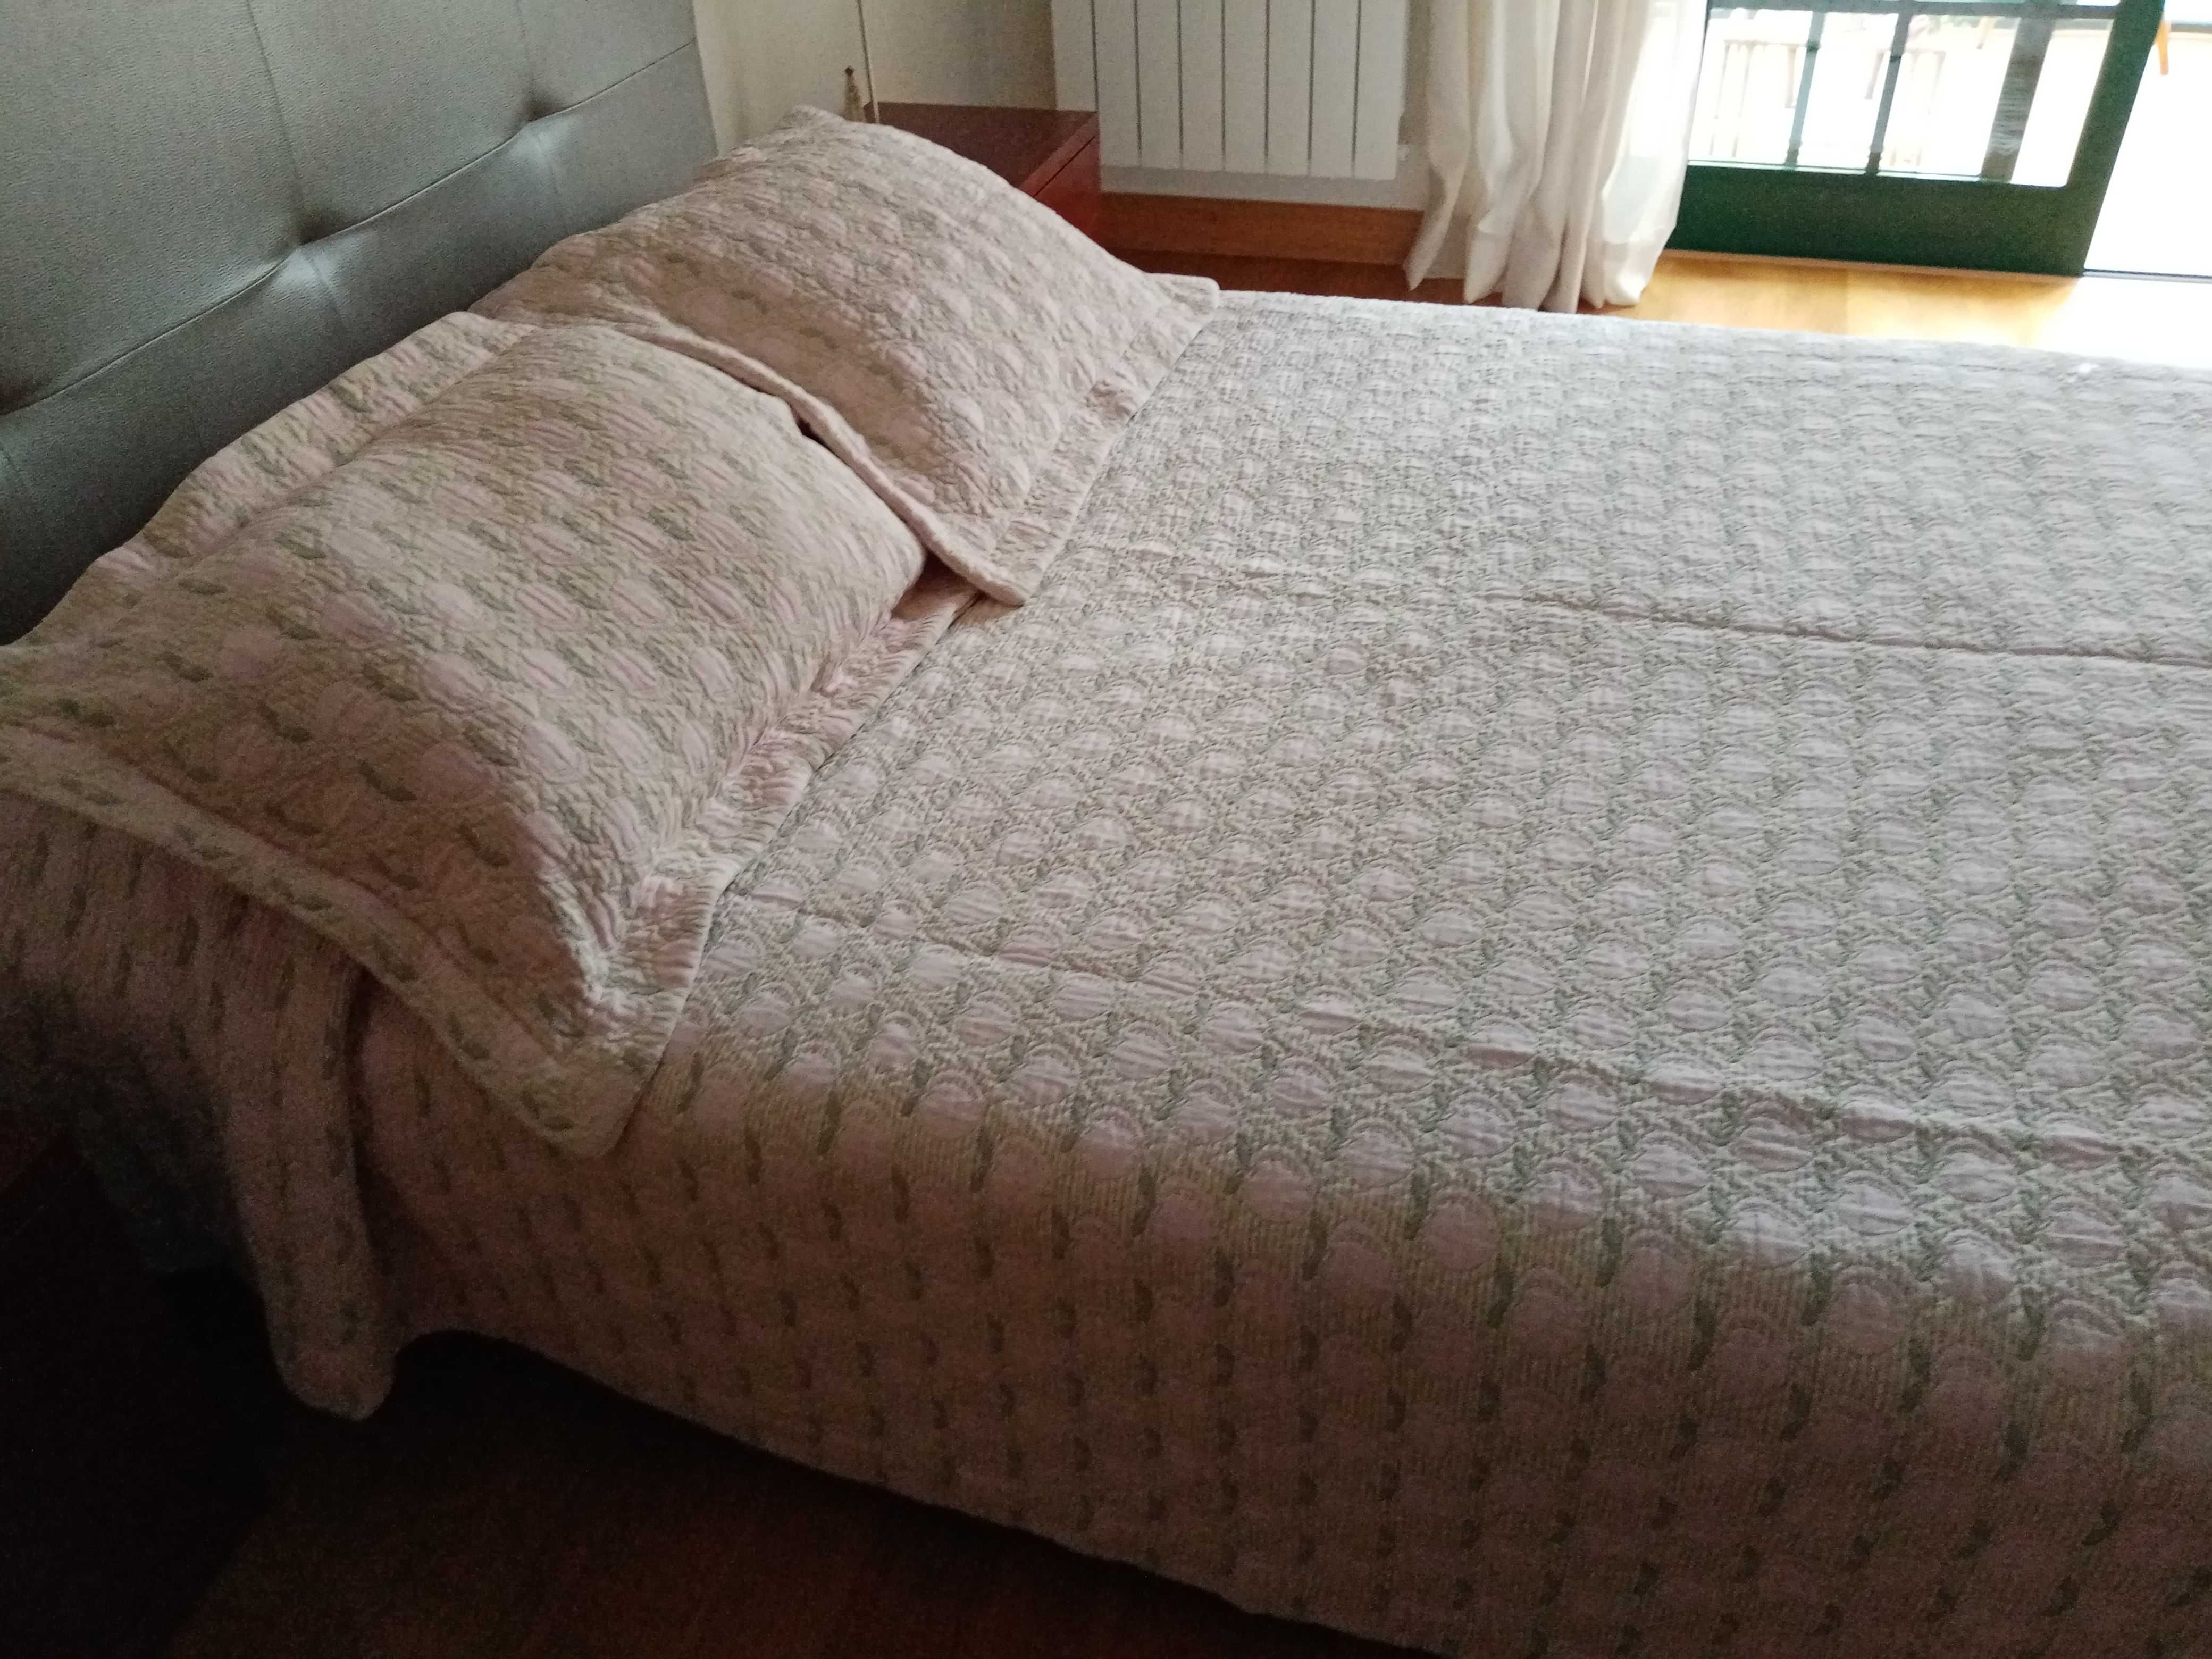 Colcha de algodao para cama de casal com almofadas